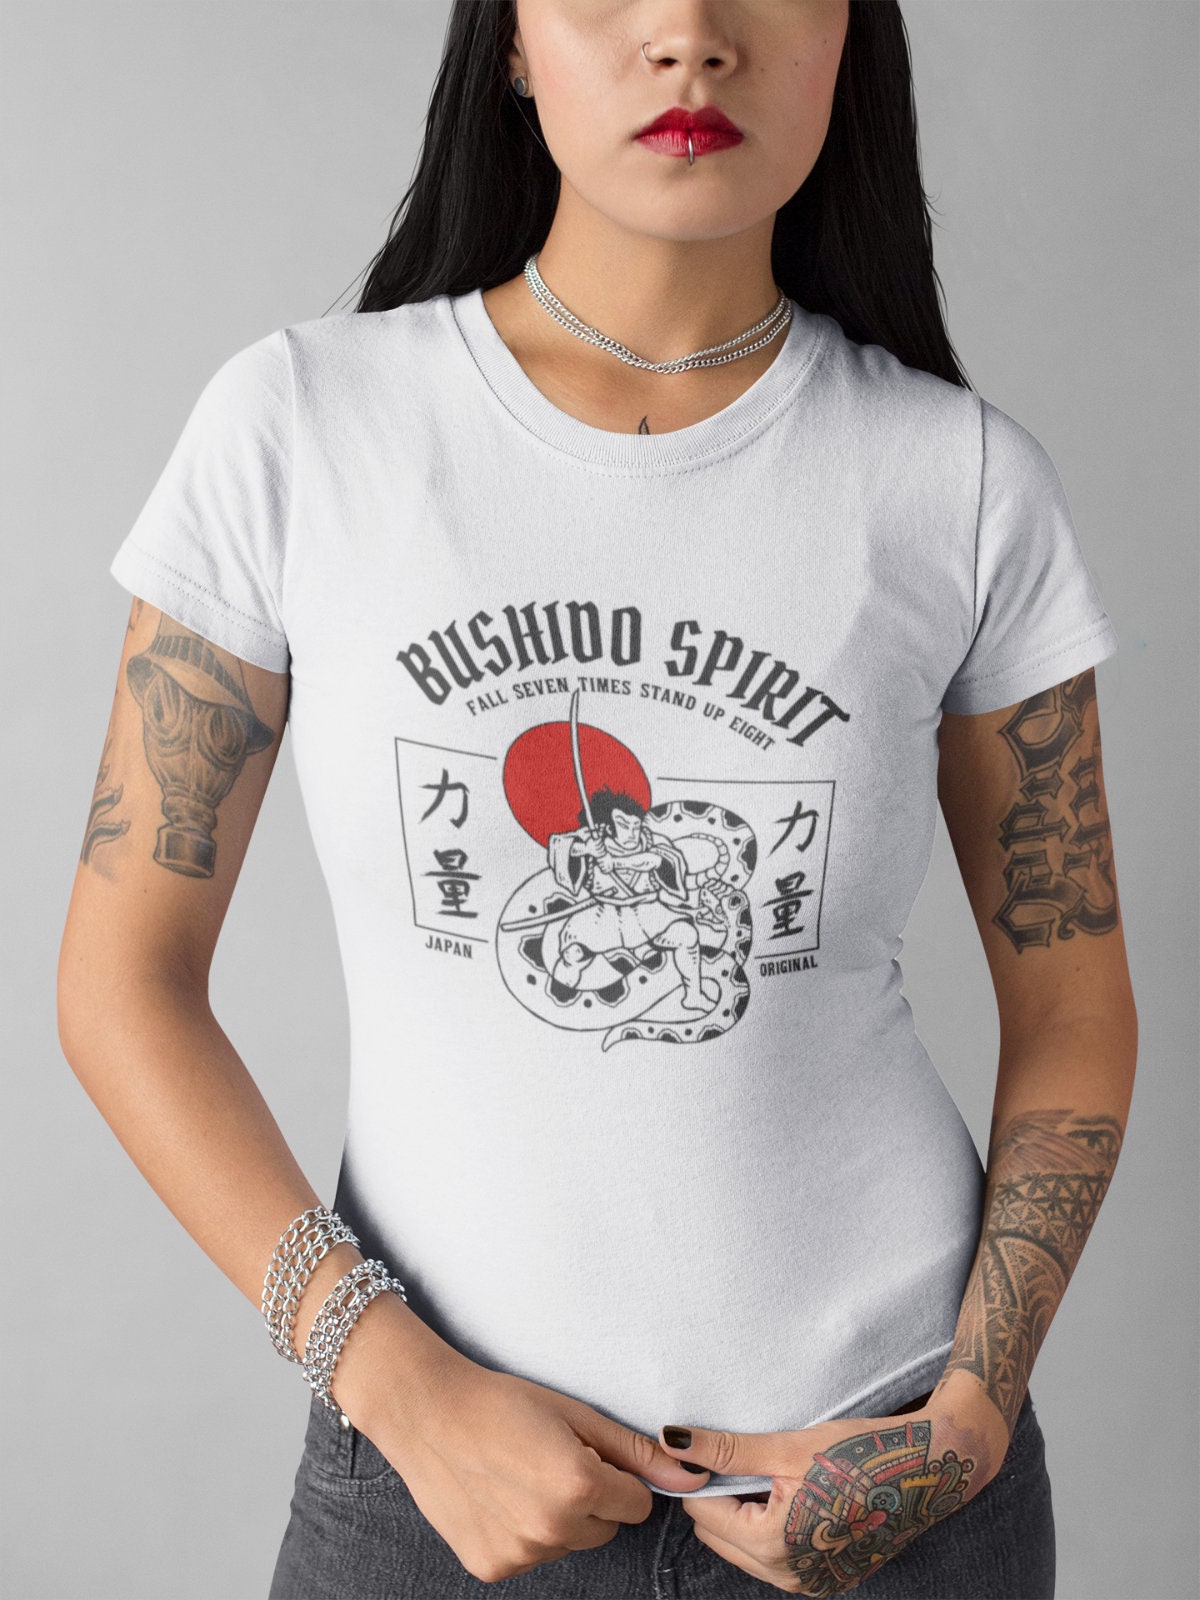 Fall 7 Times Stand up 8 Bushido Spirit Warrior Women's T-shirt Screen  Printed -  Canada